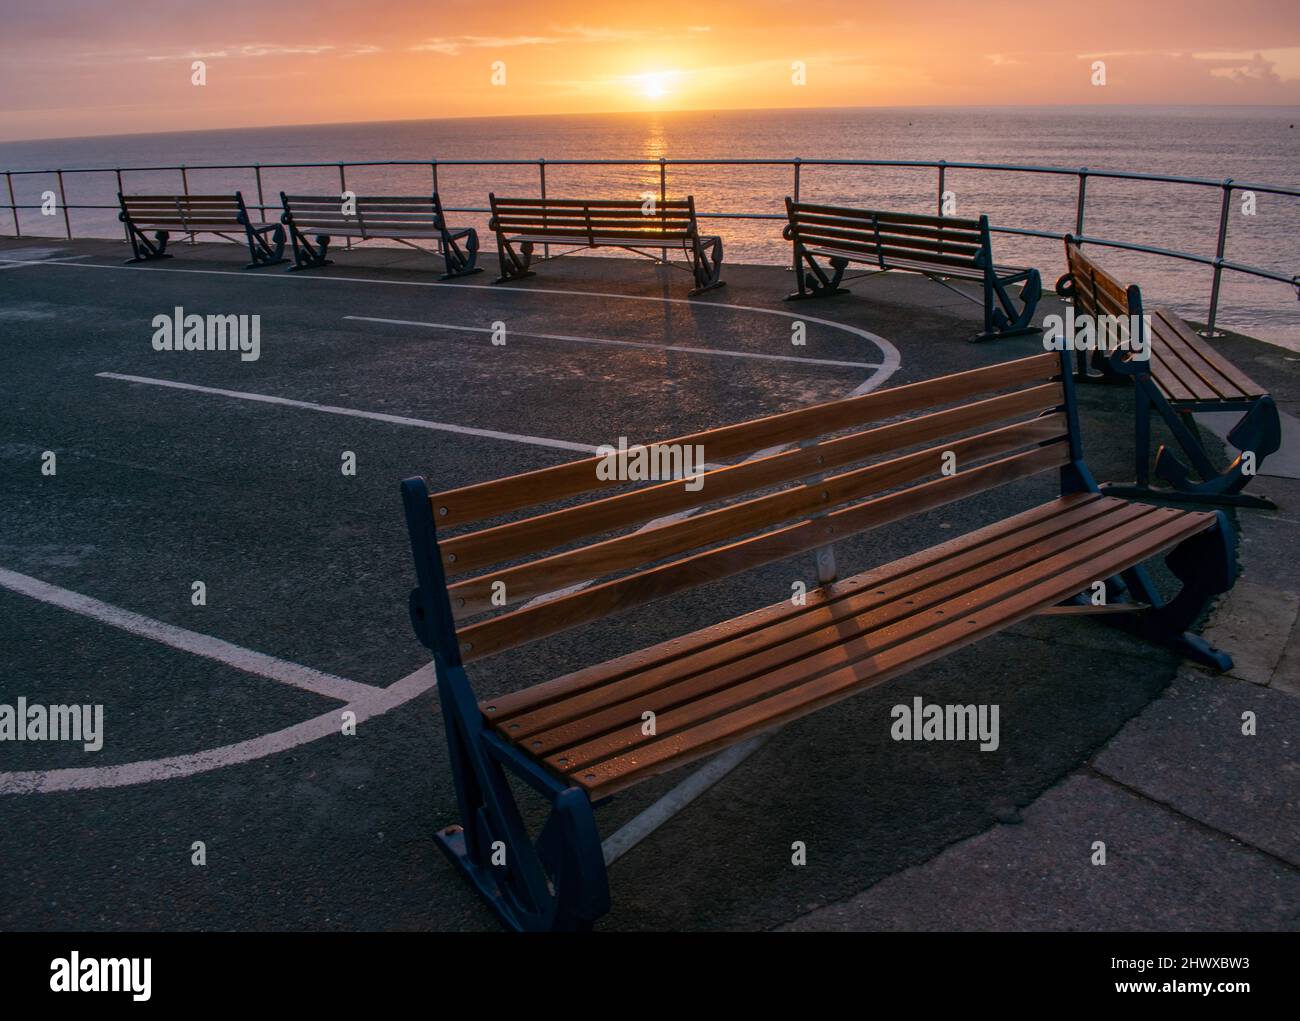 Una fila curva de seis bancos de madera frente al mar en una mañana fría y clara. La luz del sol ámbar los drena en un resplandor anaranjado mientras que están vacíos Foto de stock